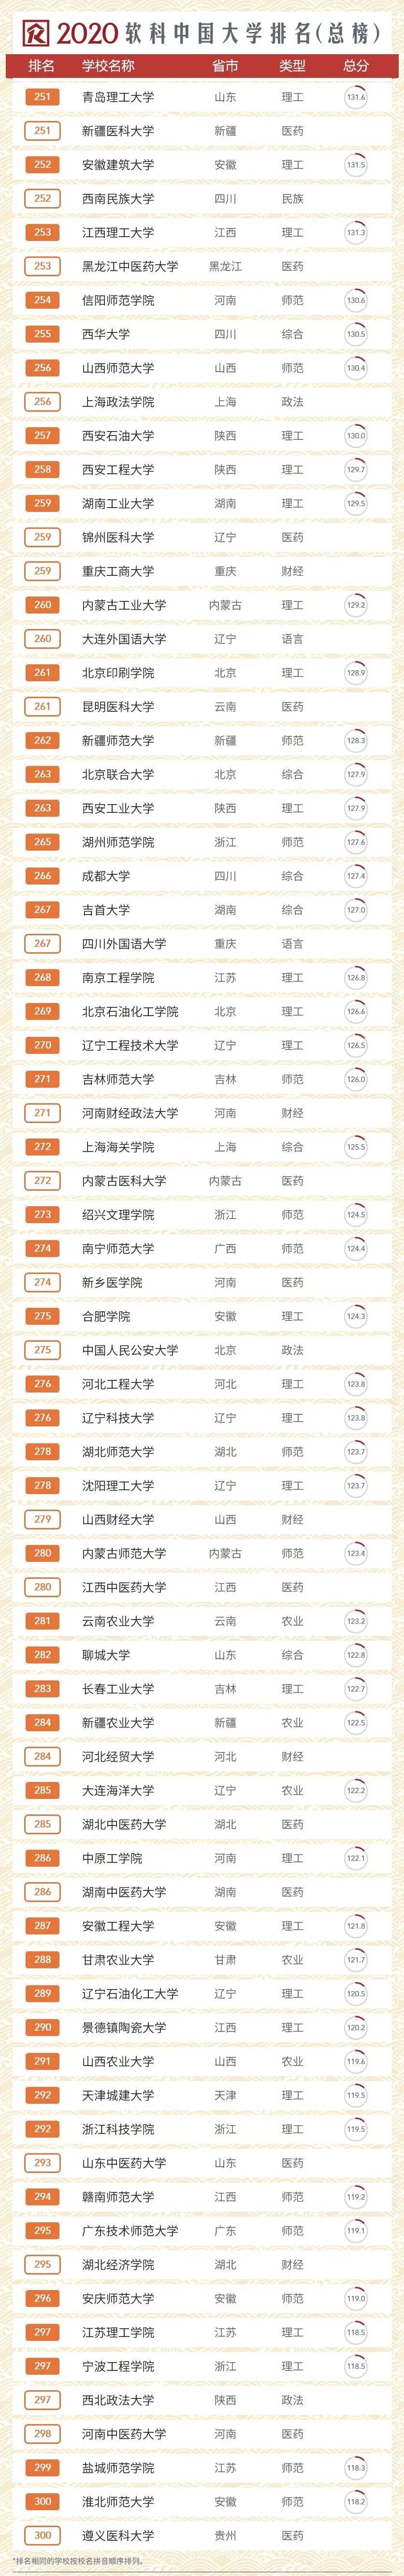 2020年全国大学排名_2020中国大学排名发布!前10排名突变!快来看看你的大